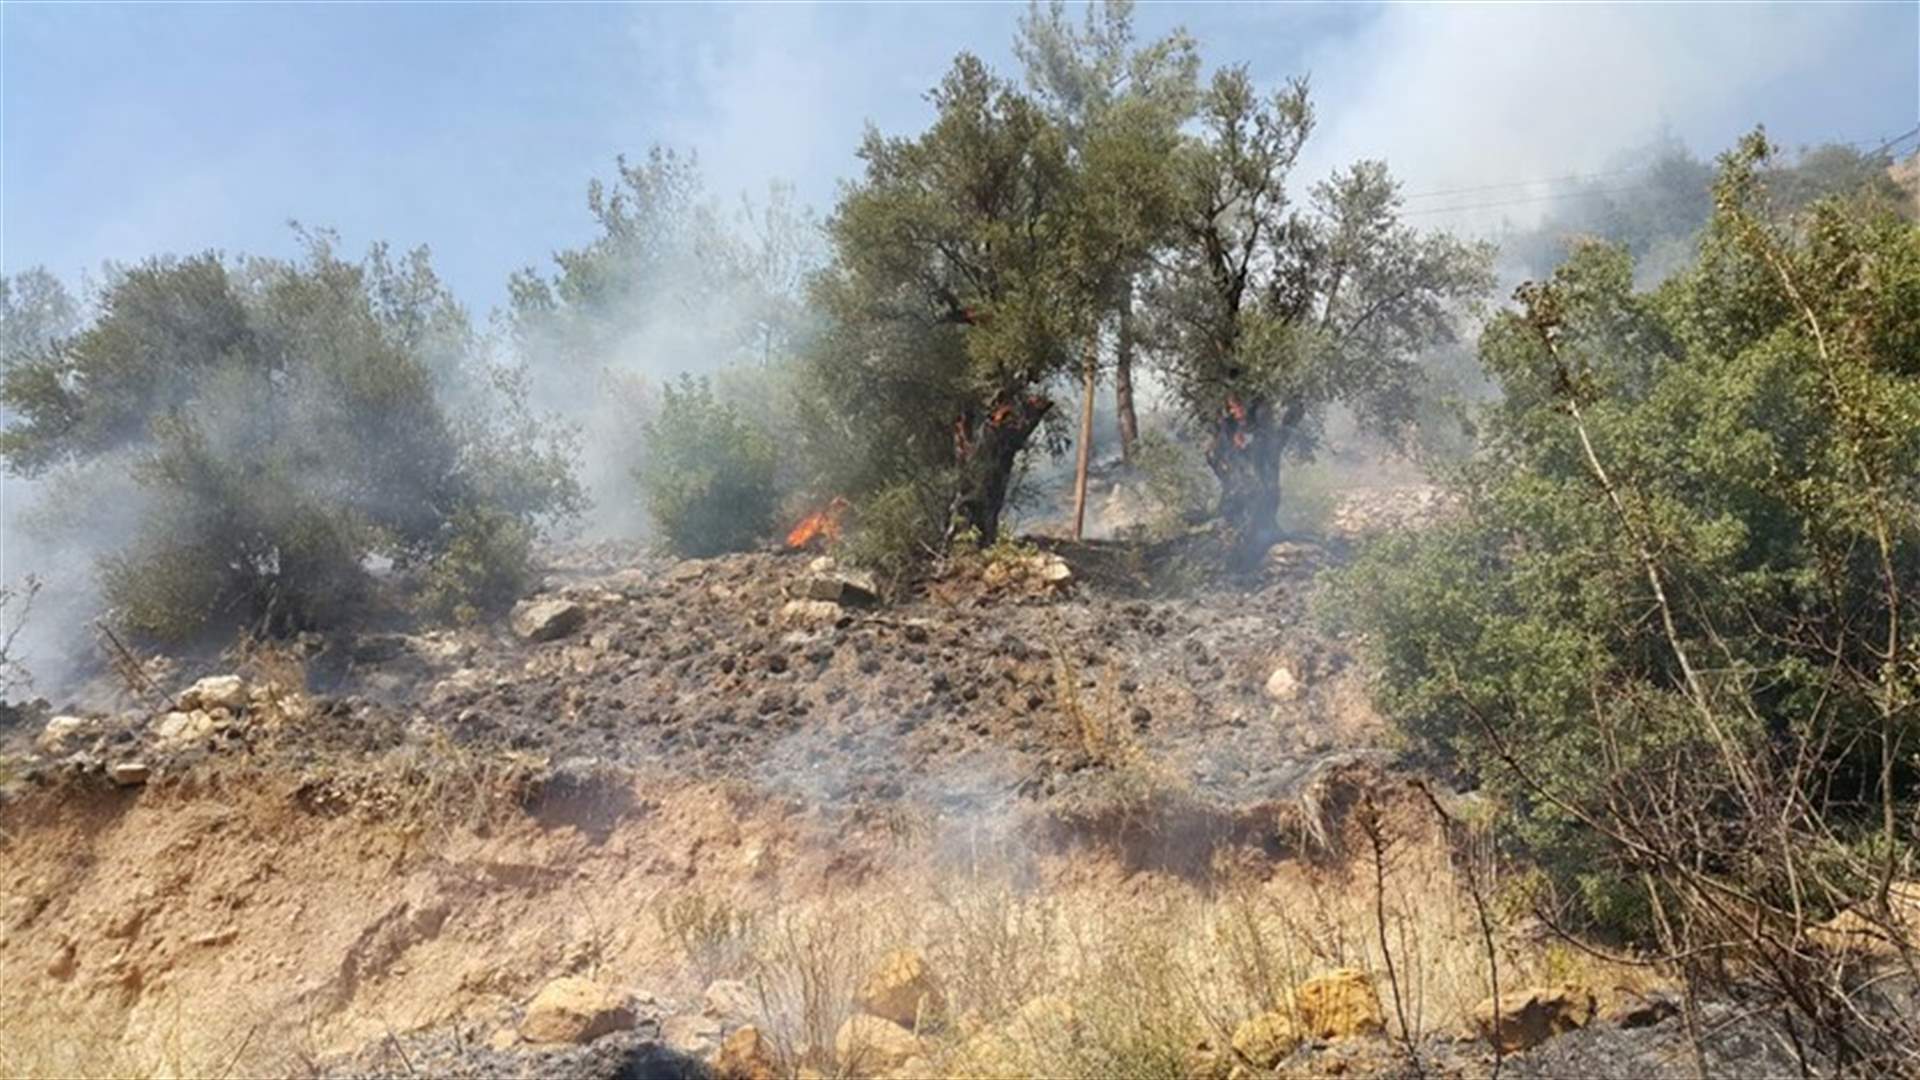 [PHOTOS] Fire erupts in Akkar town of Qabeit 